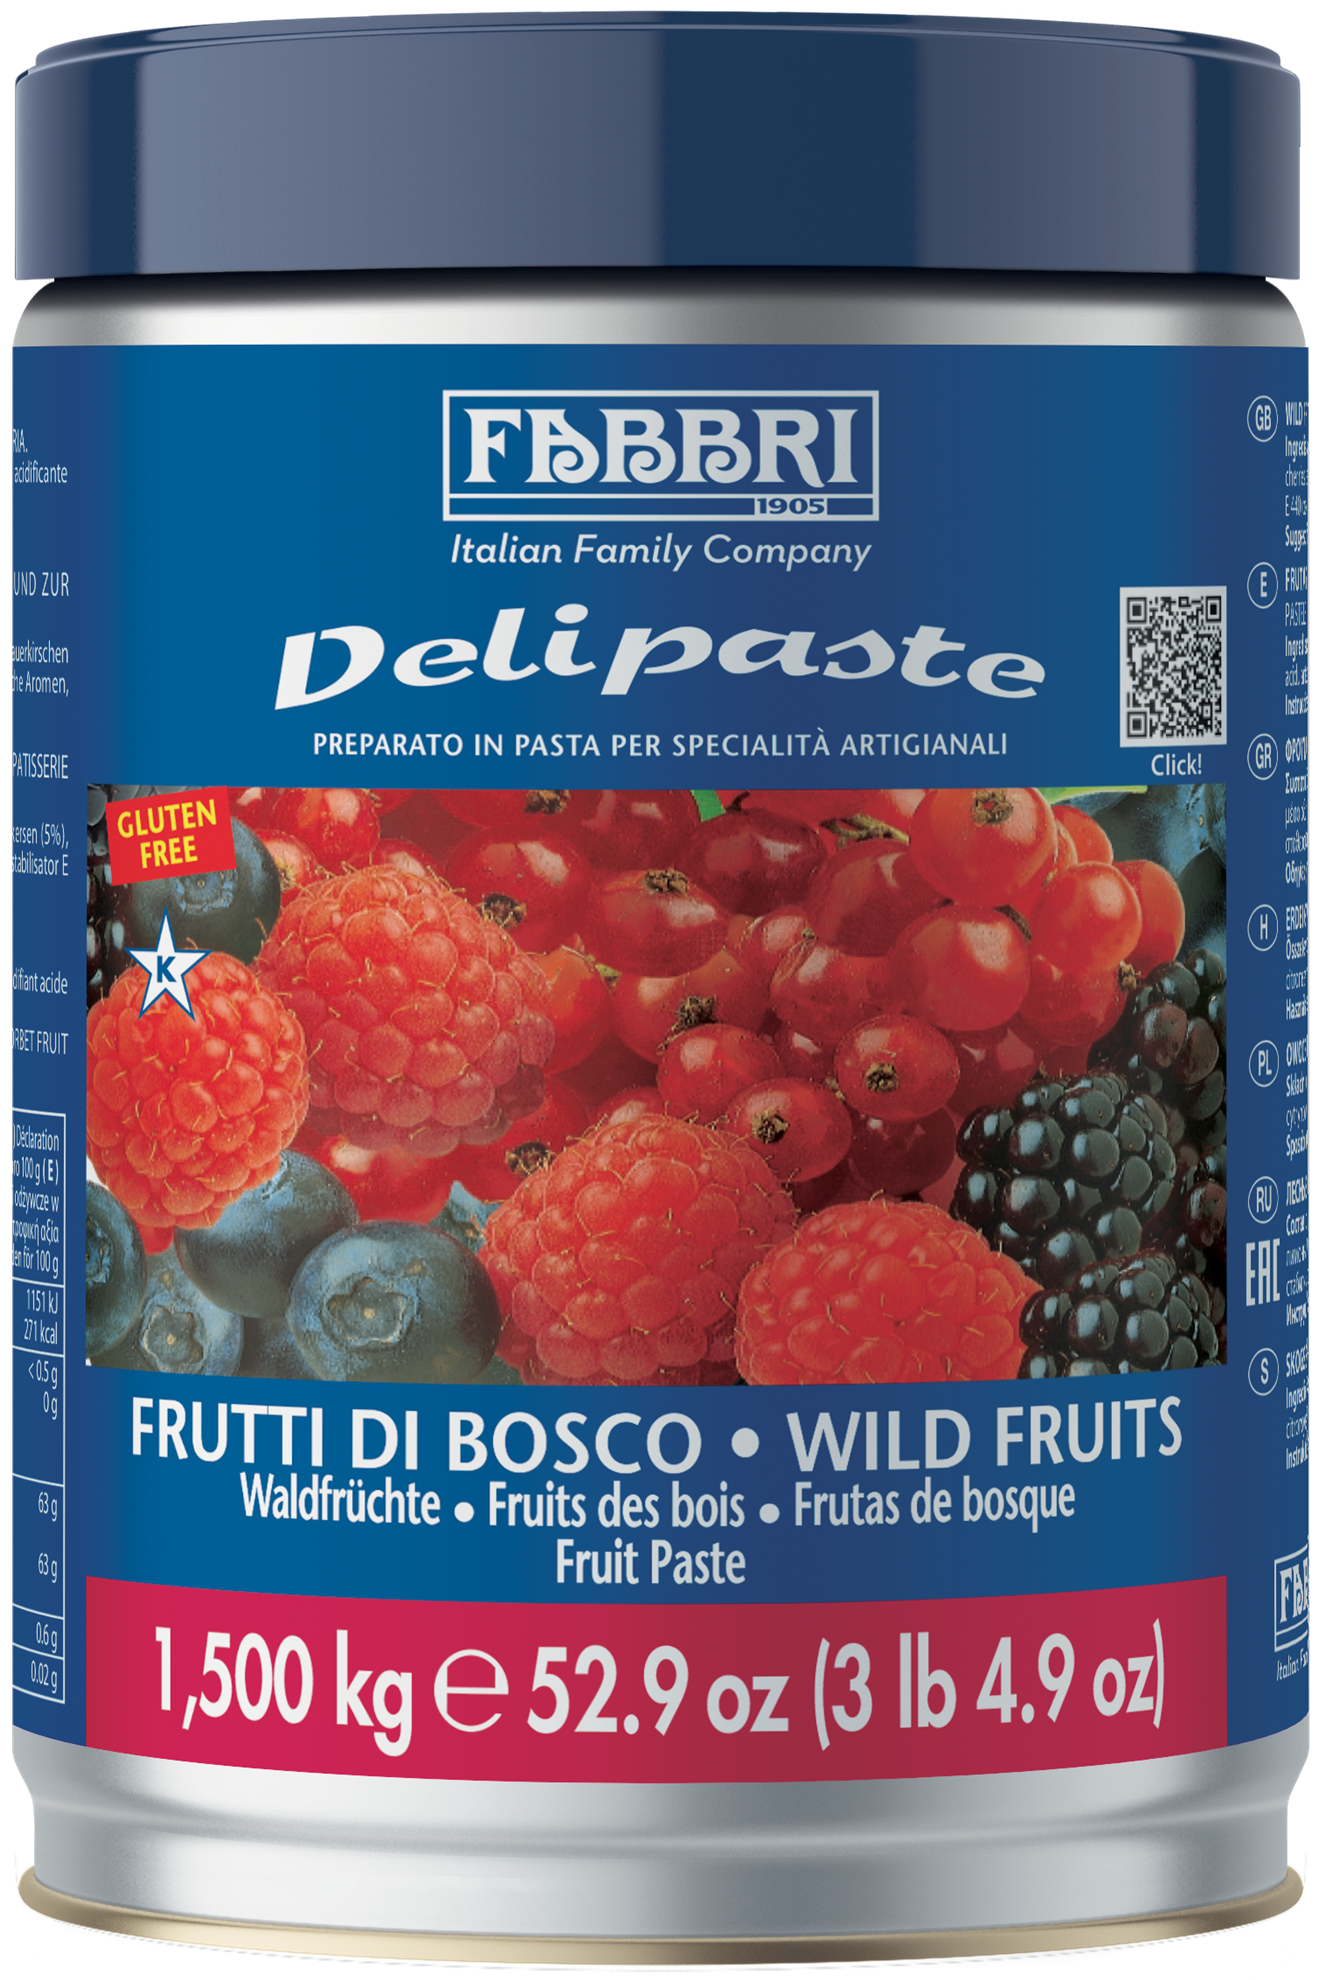 Frutti di Bosco EU - Fabbri 1905